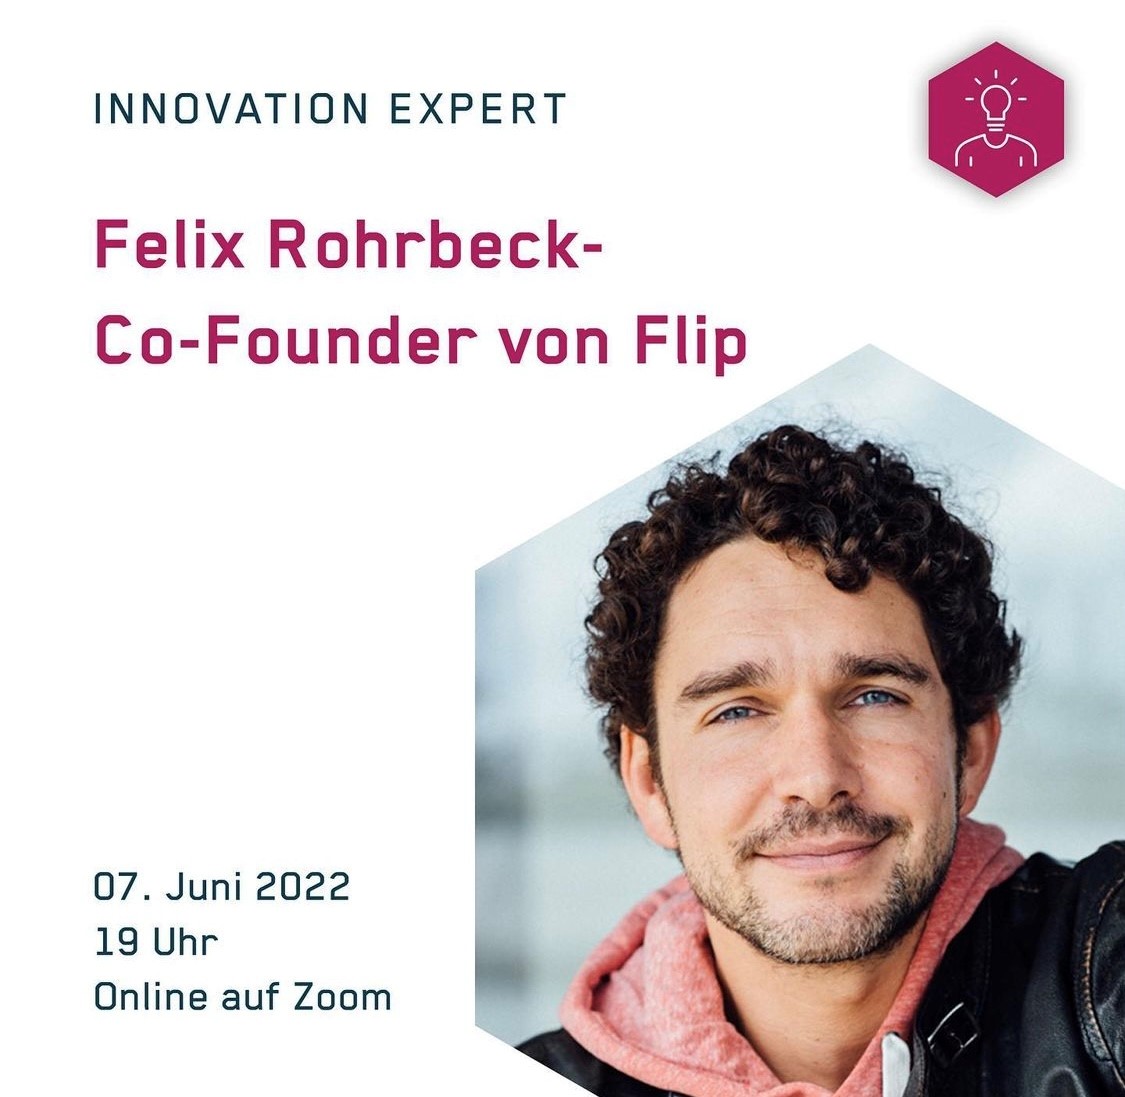 INNOVATION EXPERT mit Felix Rohrbeck - Dienstag, 07.06.2022 um 19 Uhr (online)